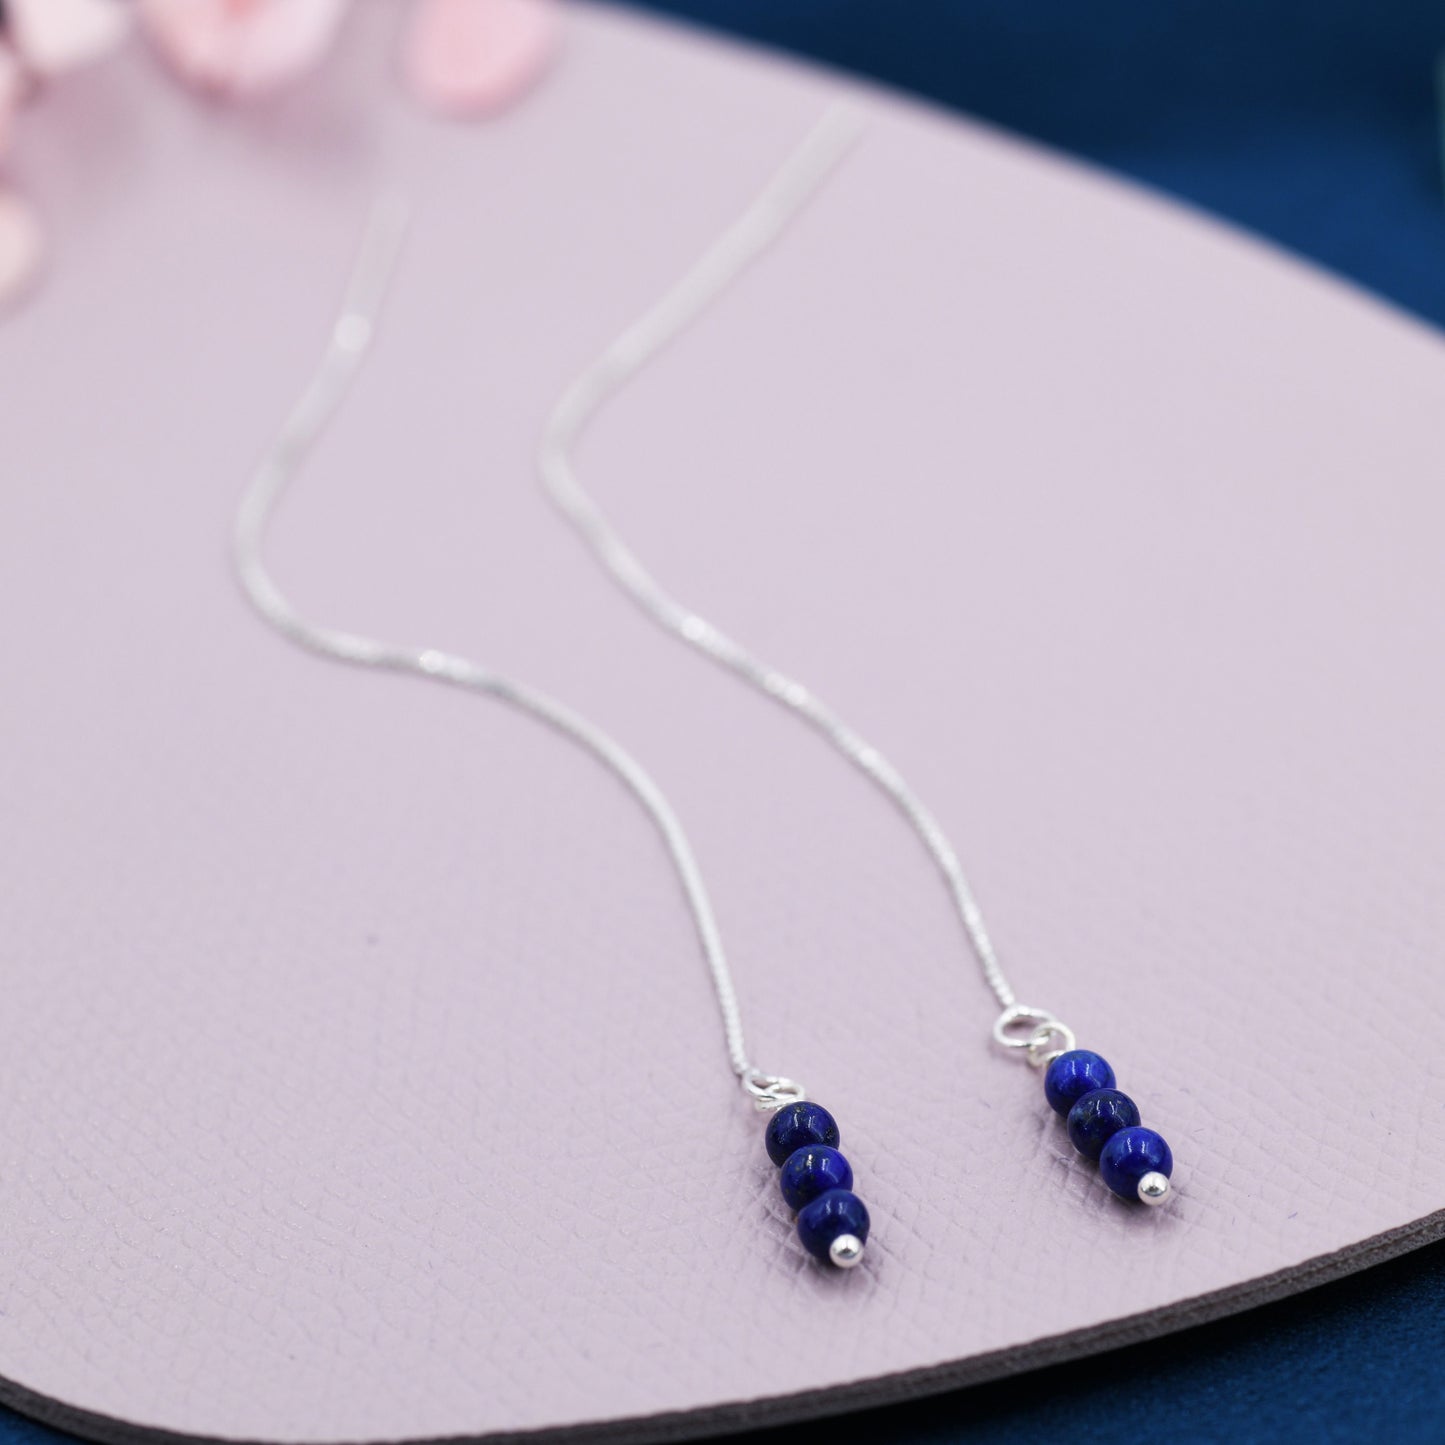 Genuine Lapis Lazuli Gemstone Ear Threaders in Sterling Silver, Three Beads Threader Earrings, Ear Jacket. Dark Blue Gemstones